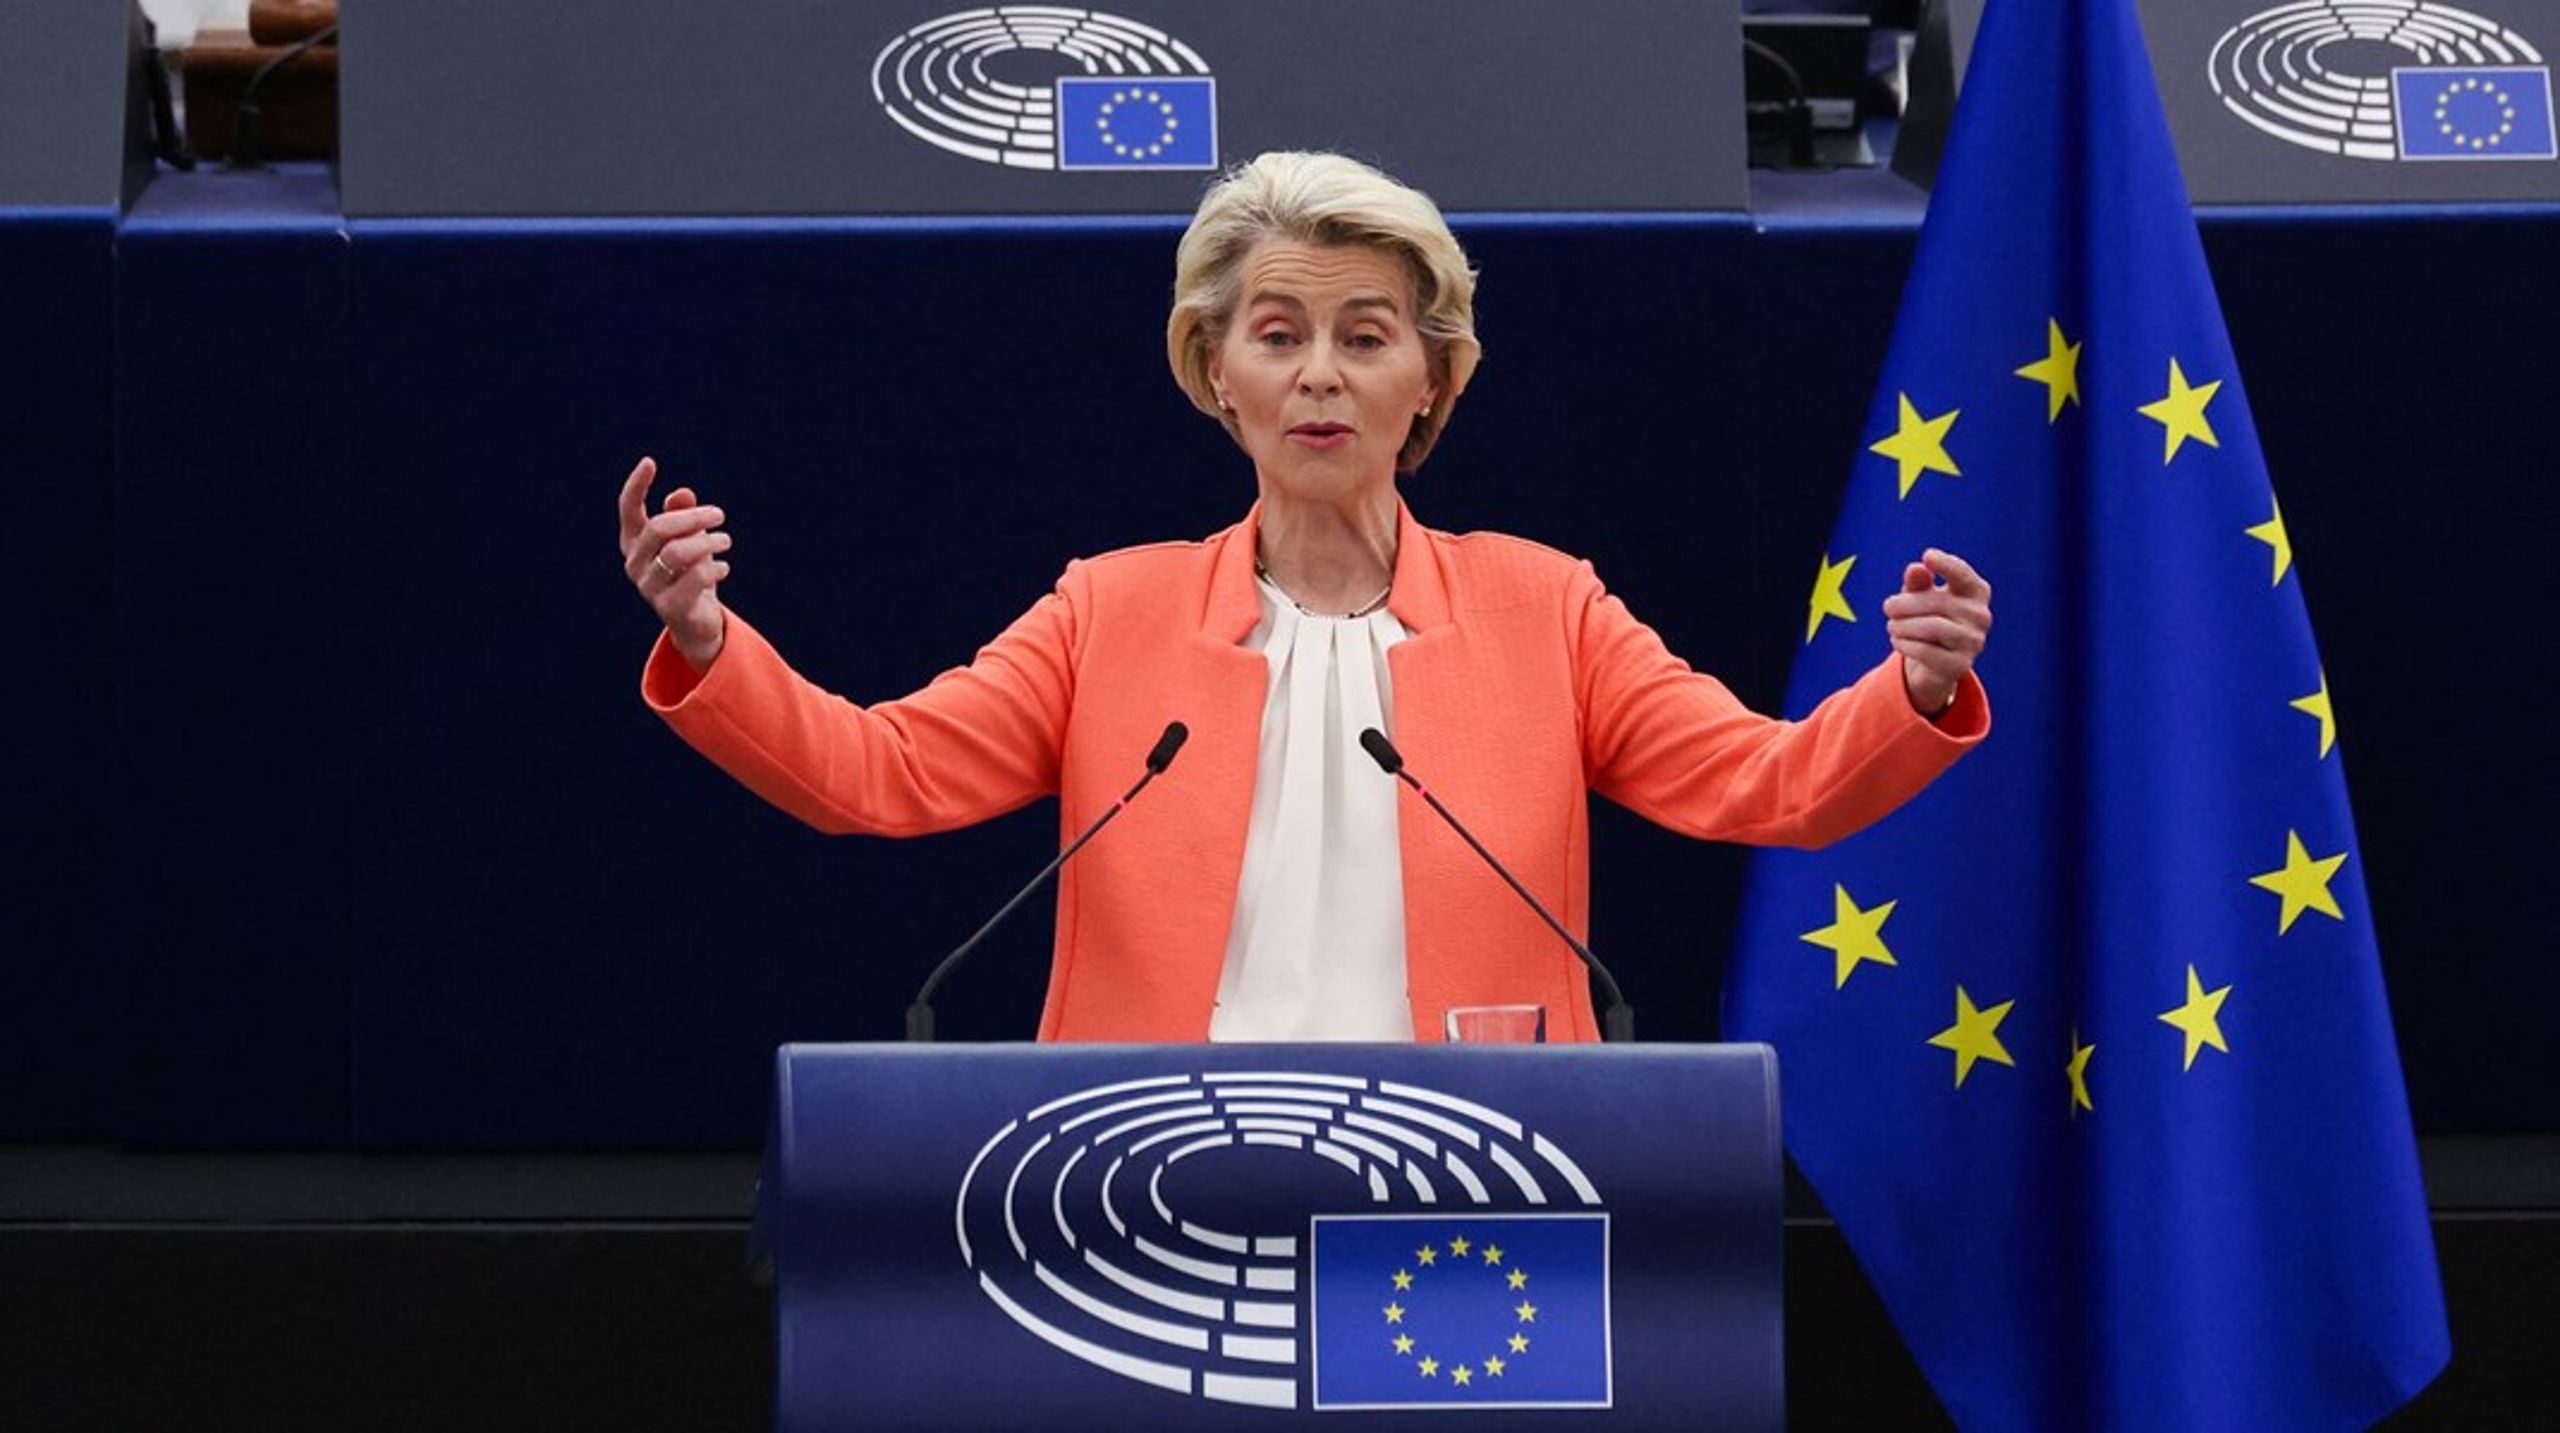 Europa må være klar til forandring, siger Ursula von der Leyen.